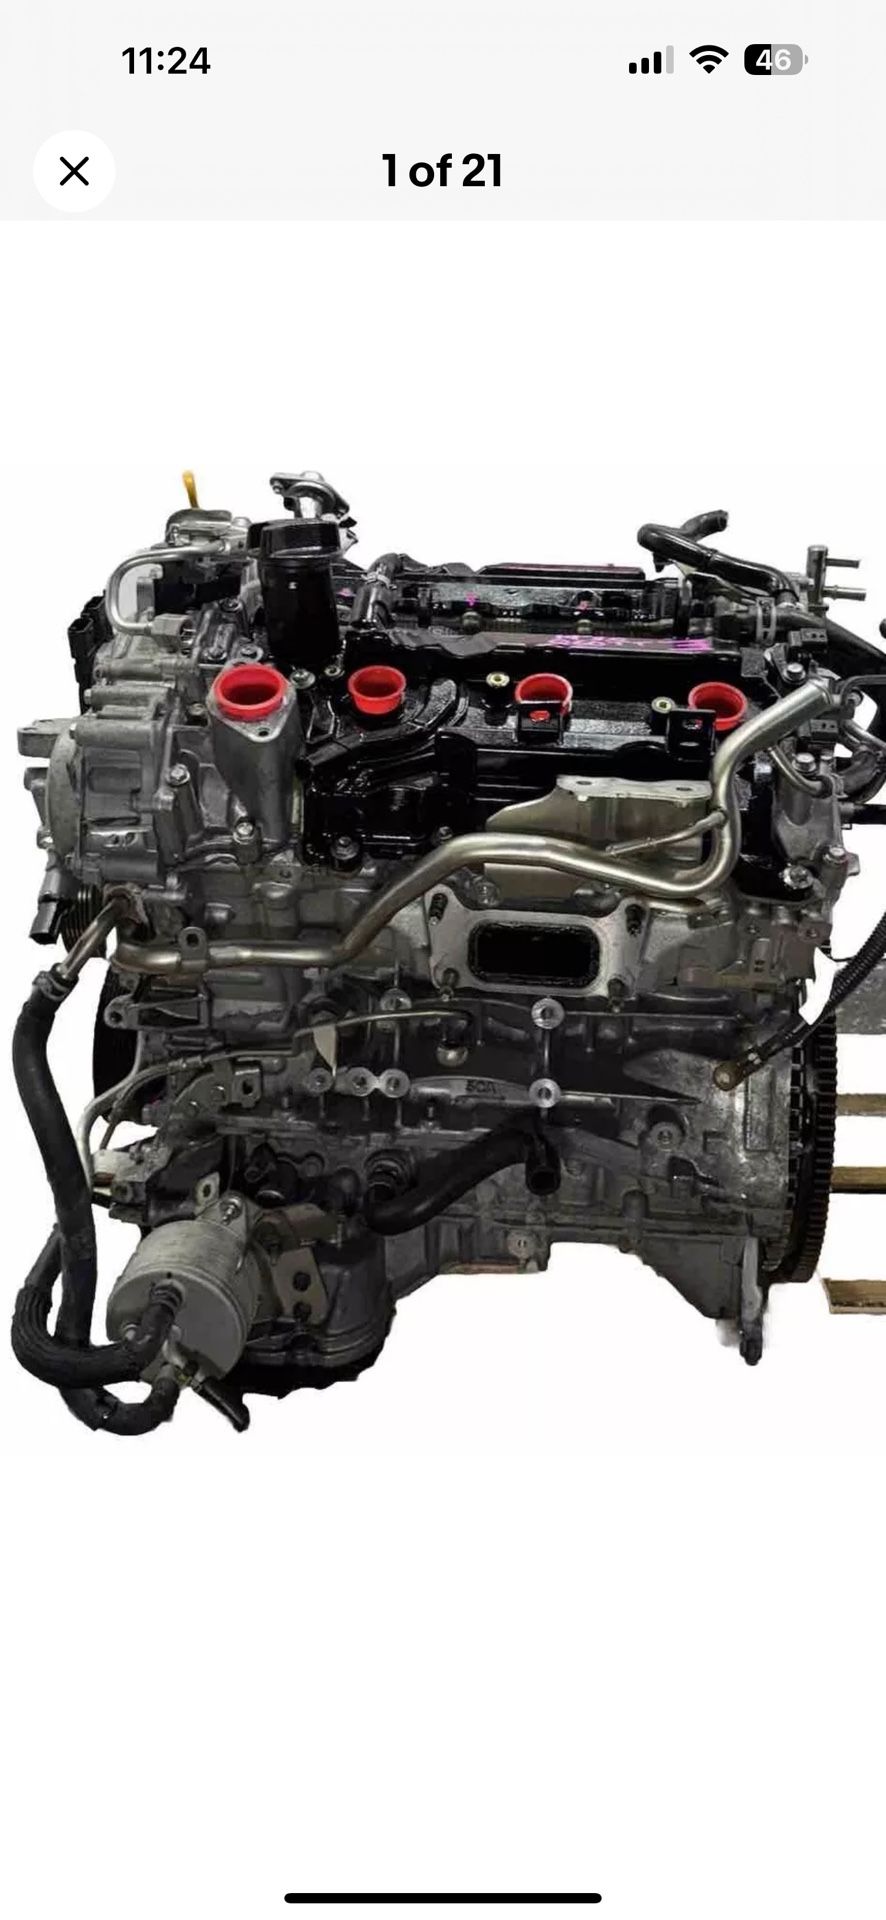 2019 Infiniti Q60 VR30DDTT 3.0L AUTOMATIC 2WD ENGINE ( Part )